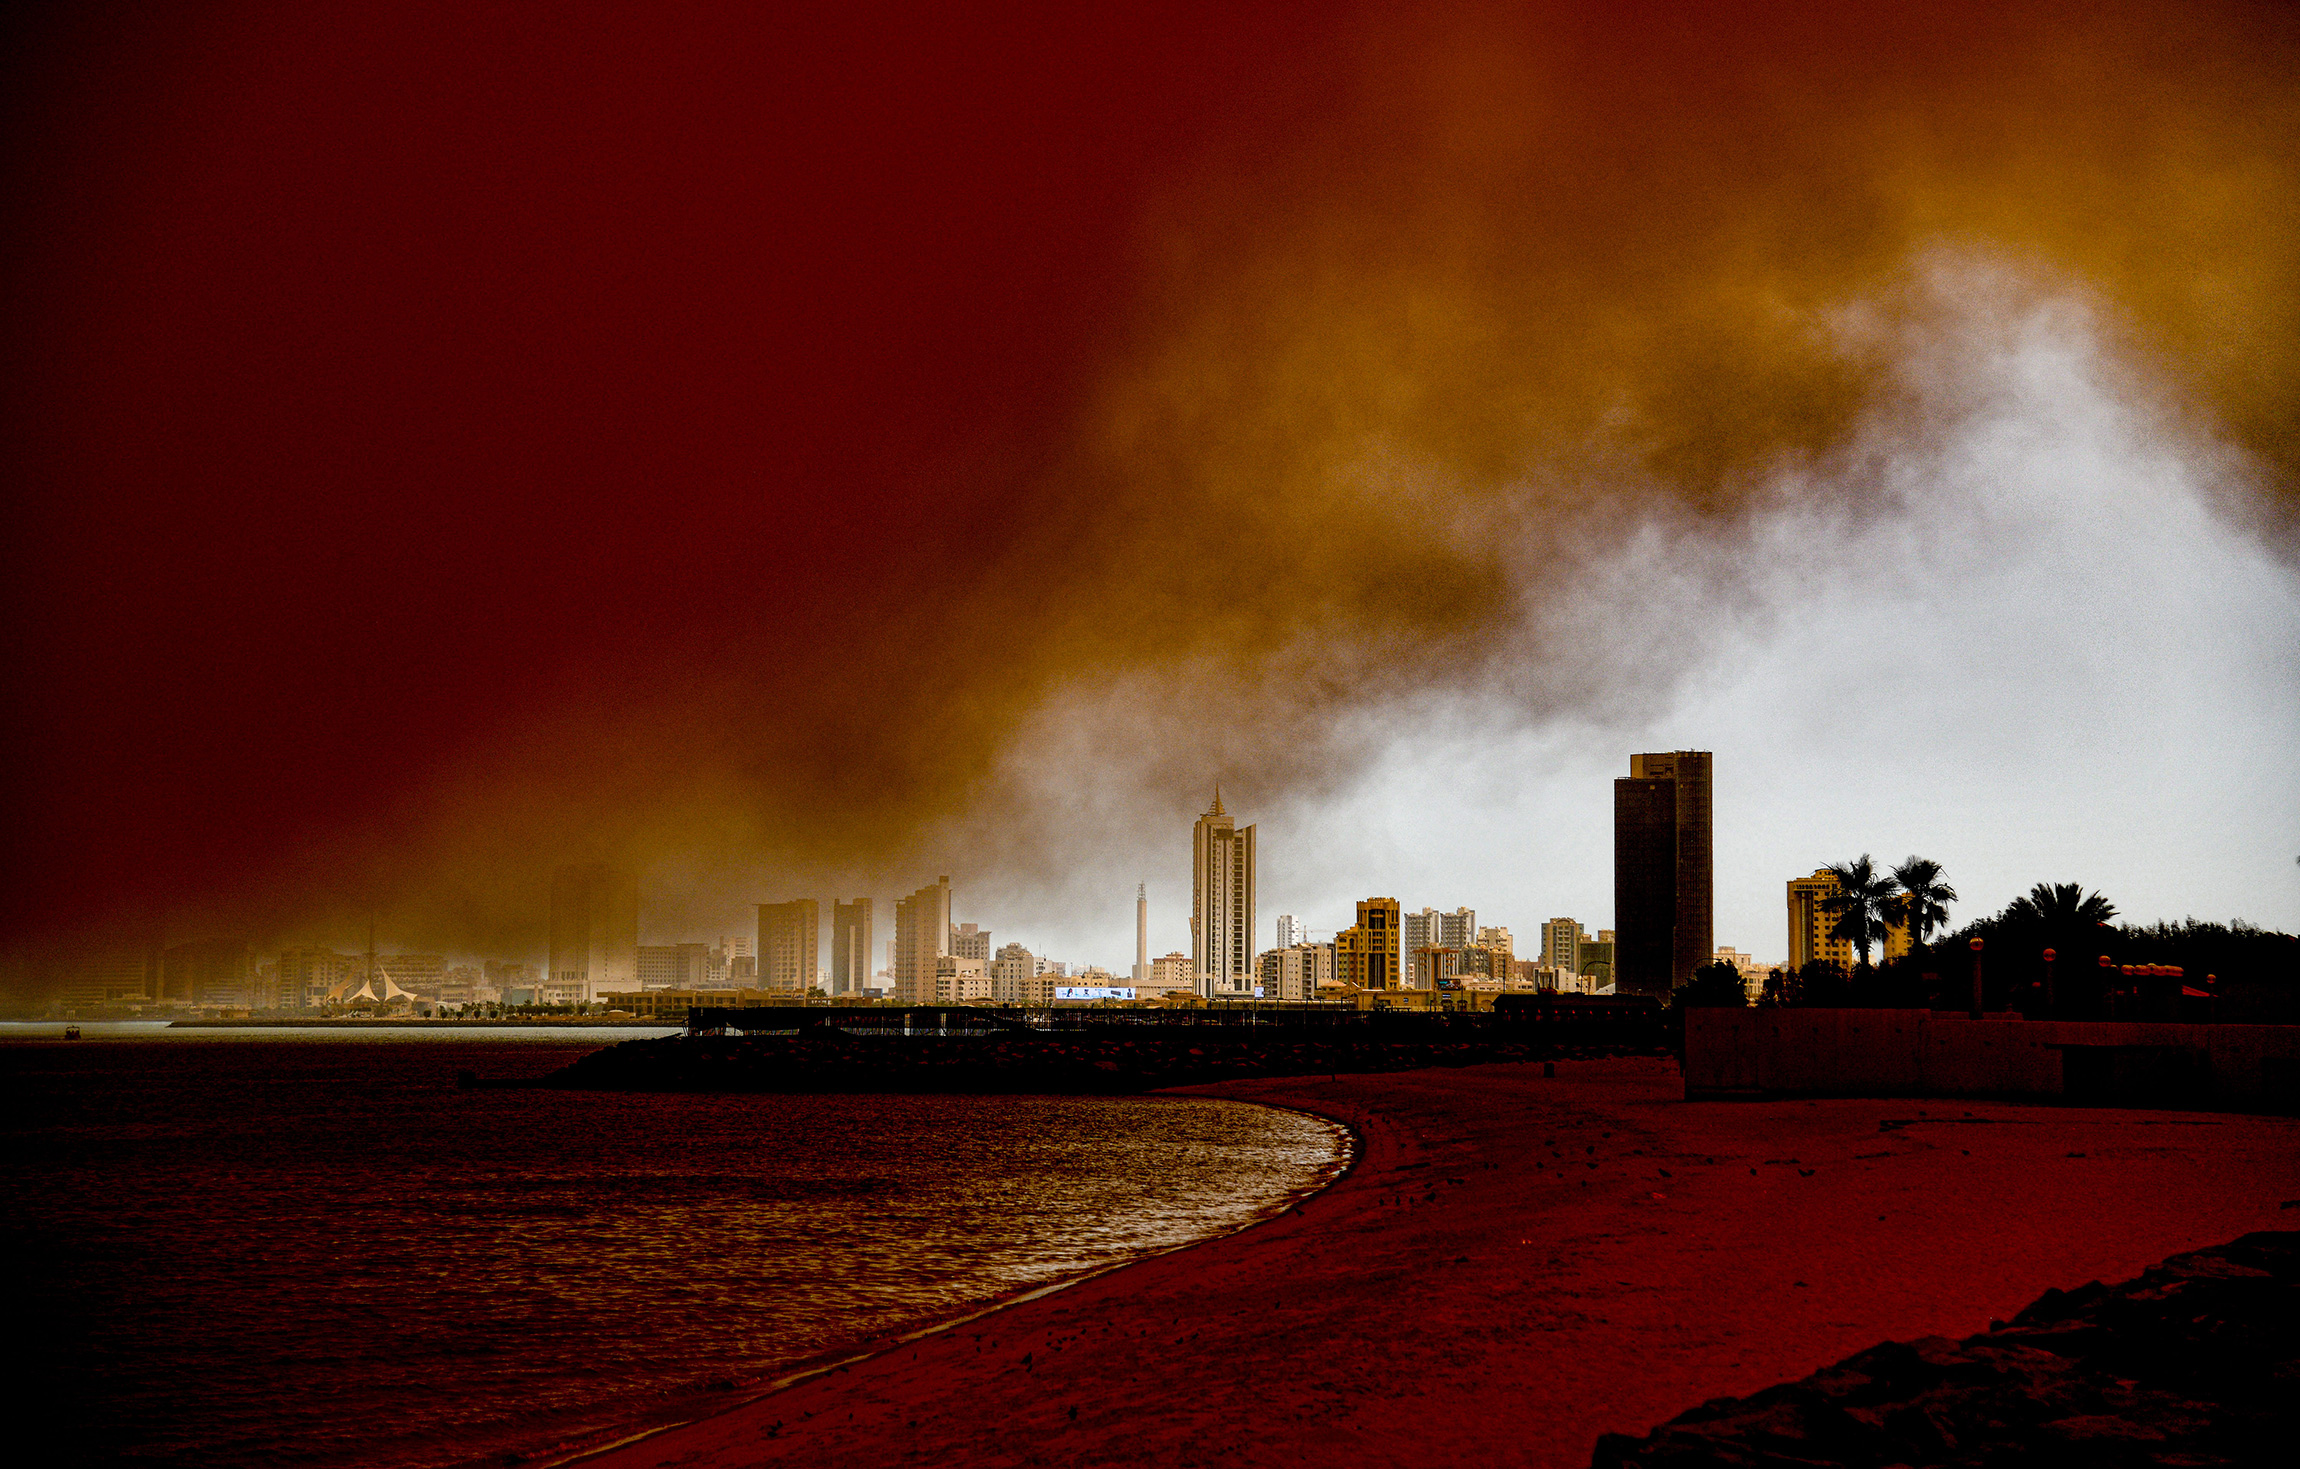 На фото:  Кувейт, берег Персидского залива, 23 мая&nbsp;2022 года.

Синоптики объявили общенациональное предупреждение об опасной погоде из-за пыльных условий, связанных с песчаной бурей. Плохие погодные условия будут сохраняться в течение 48 часов&nbsp;&mdash; до 25 мая